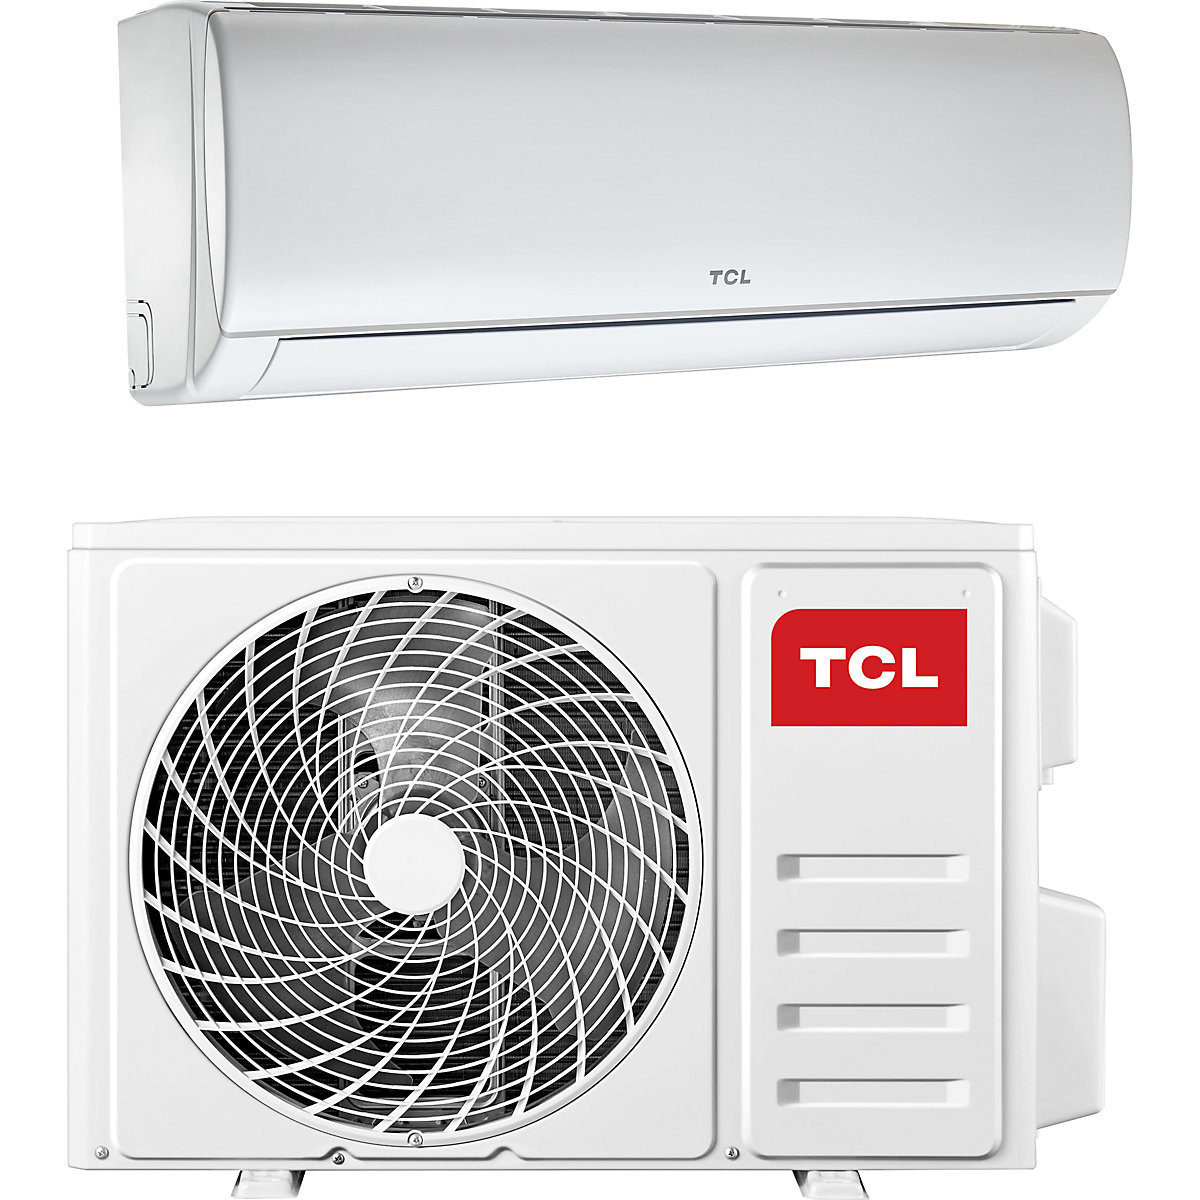 18,000 BTU split air conditioner - TCL